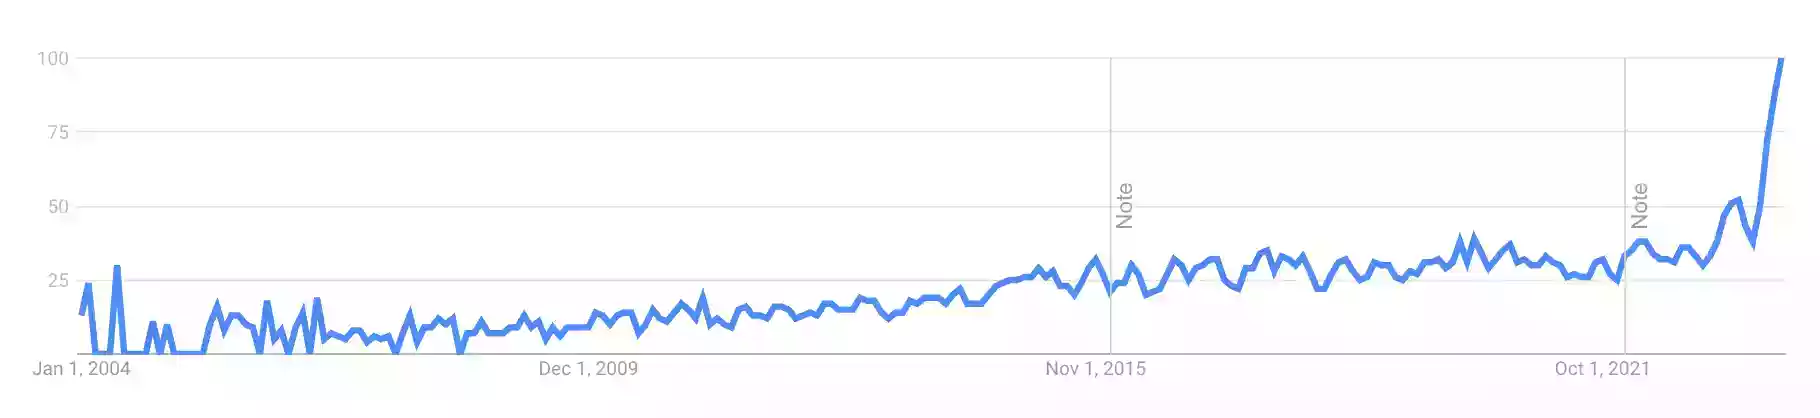 谷歌趋势图显示去年“多面性”一词的搜索量急剧上升